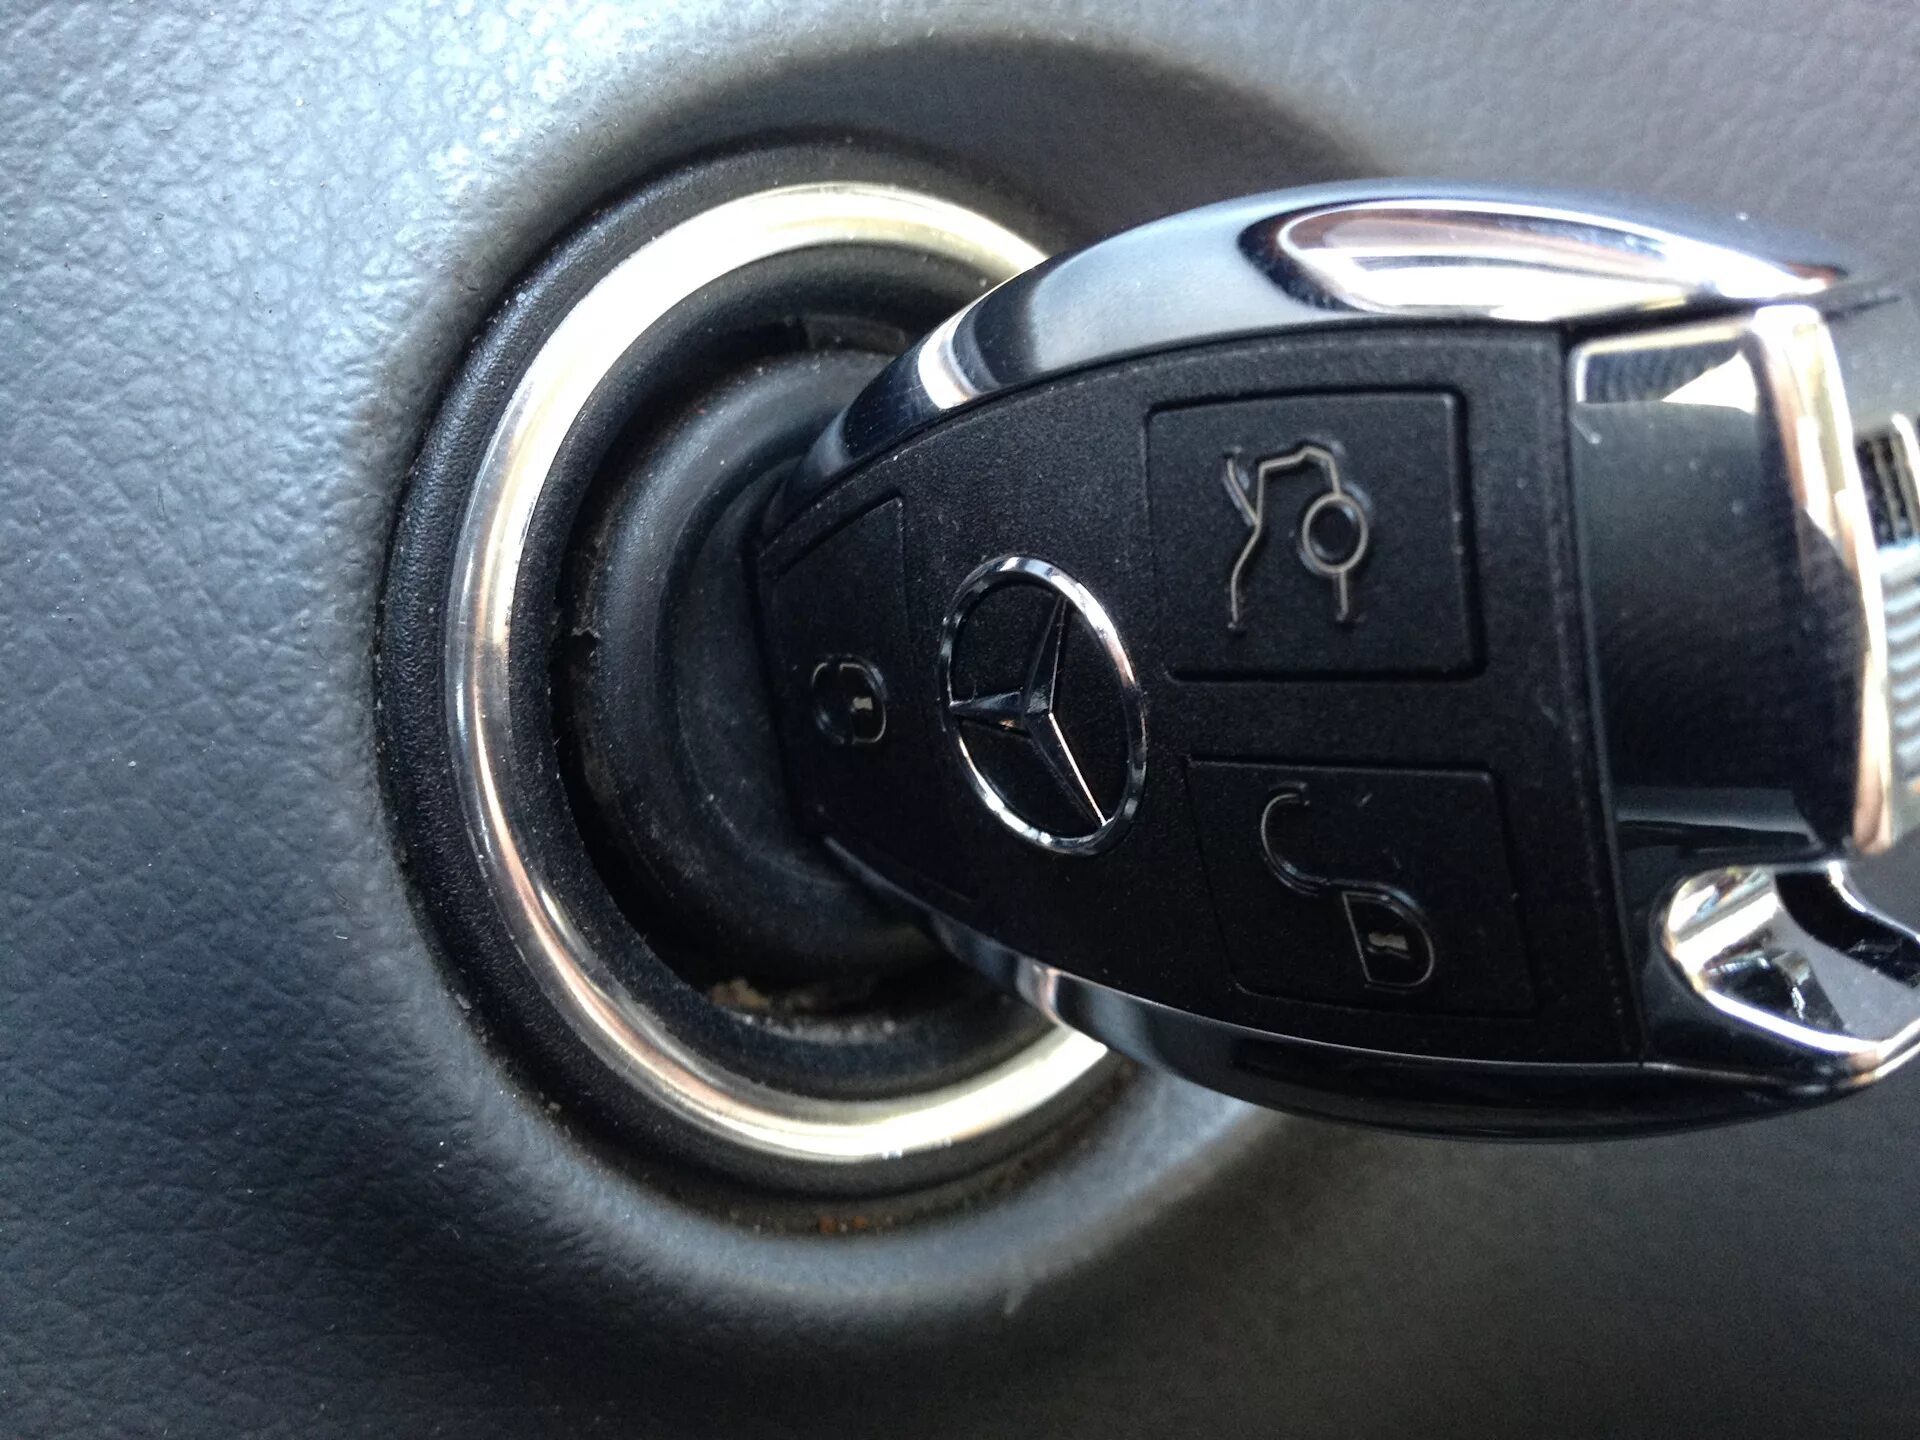 Ключи в замке зажигания машина. Замок зажигания w204 fbs4. W211 замок зажигания кнопка. Ключ зажигания Мерседес. Ключ замка зажигания Mercedes.